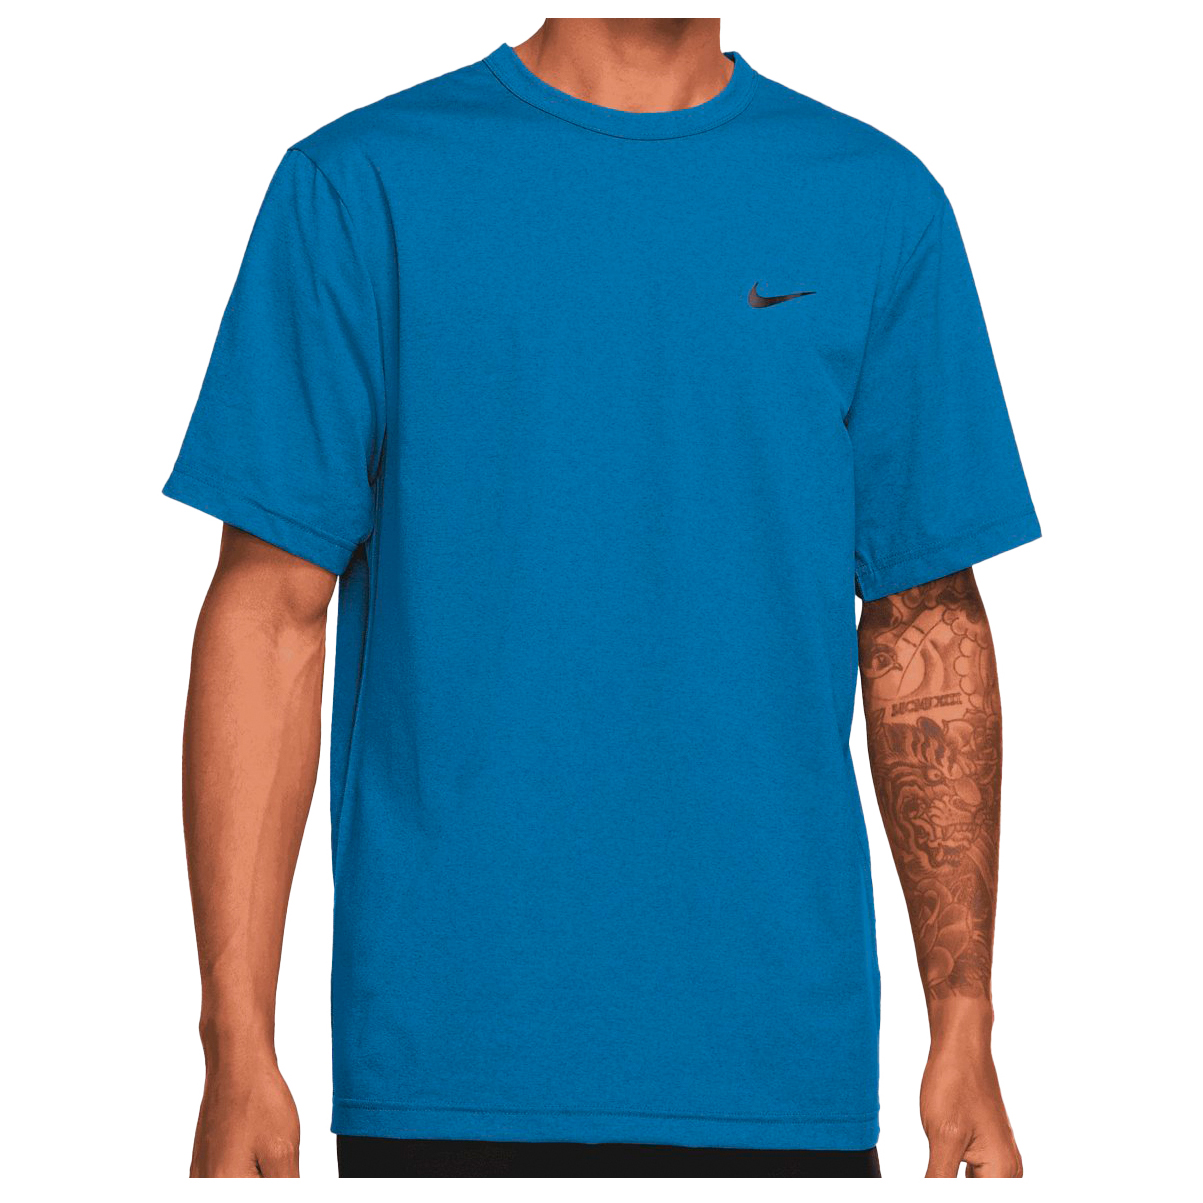 Функциональная рубашка Nike Hyverse Dri FIT UV S/S, цвет Star Blue/Black